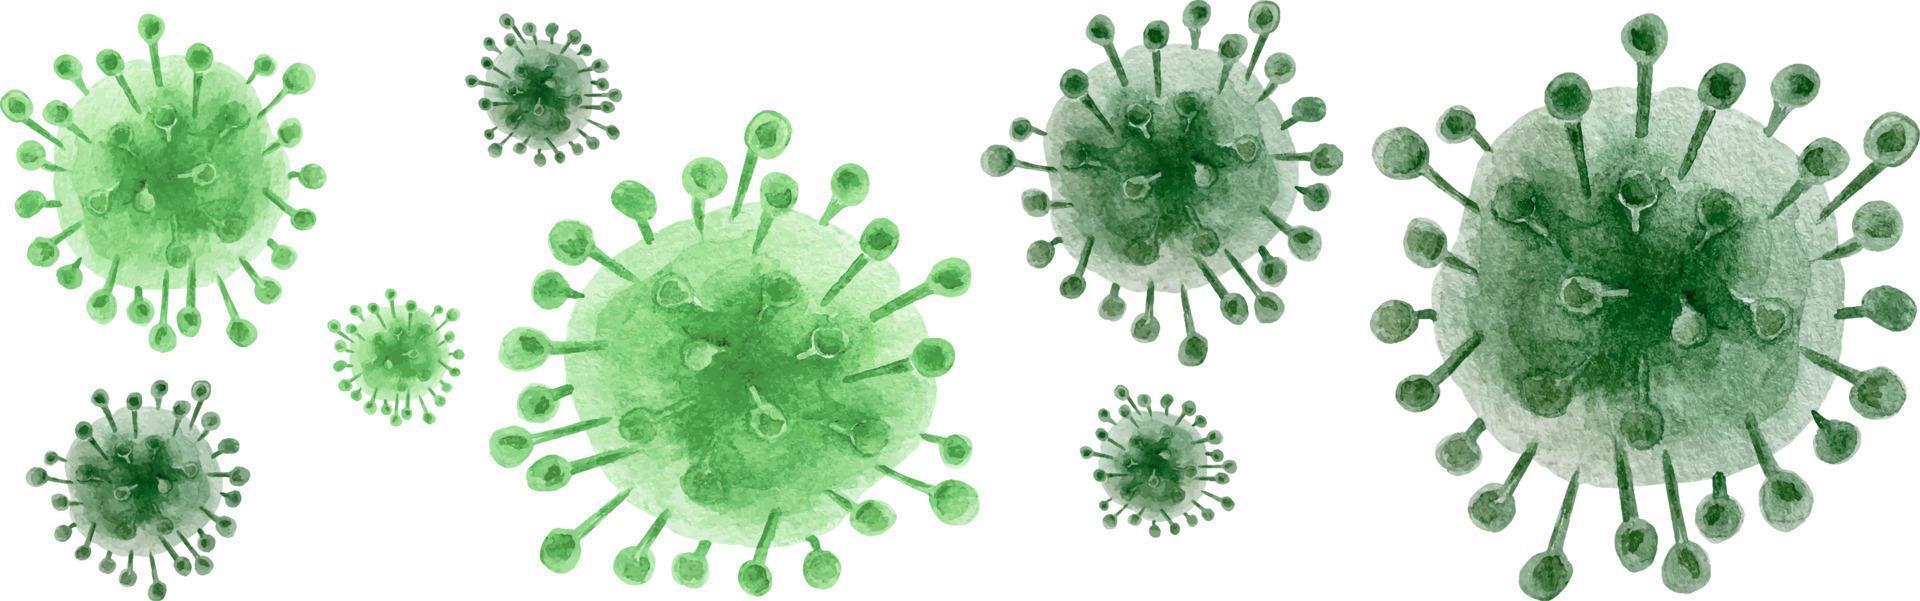 vattenfärg coronavirus cell. en uppsättning av tre stiliserade bilder av virus. grön virus med fläckar och slag. vektor